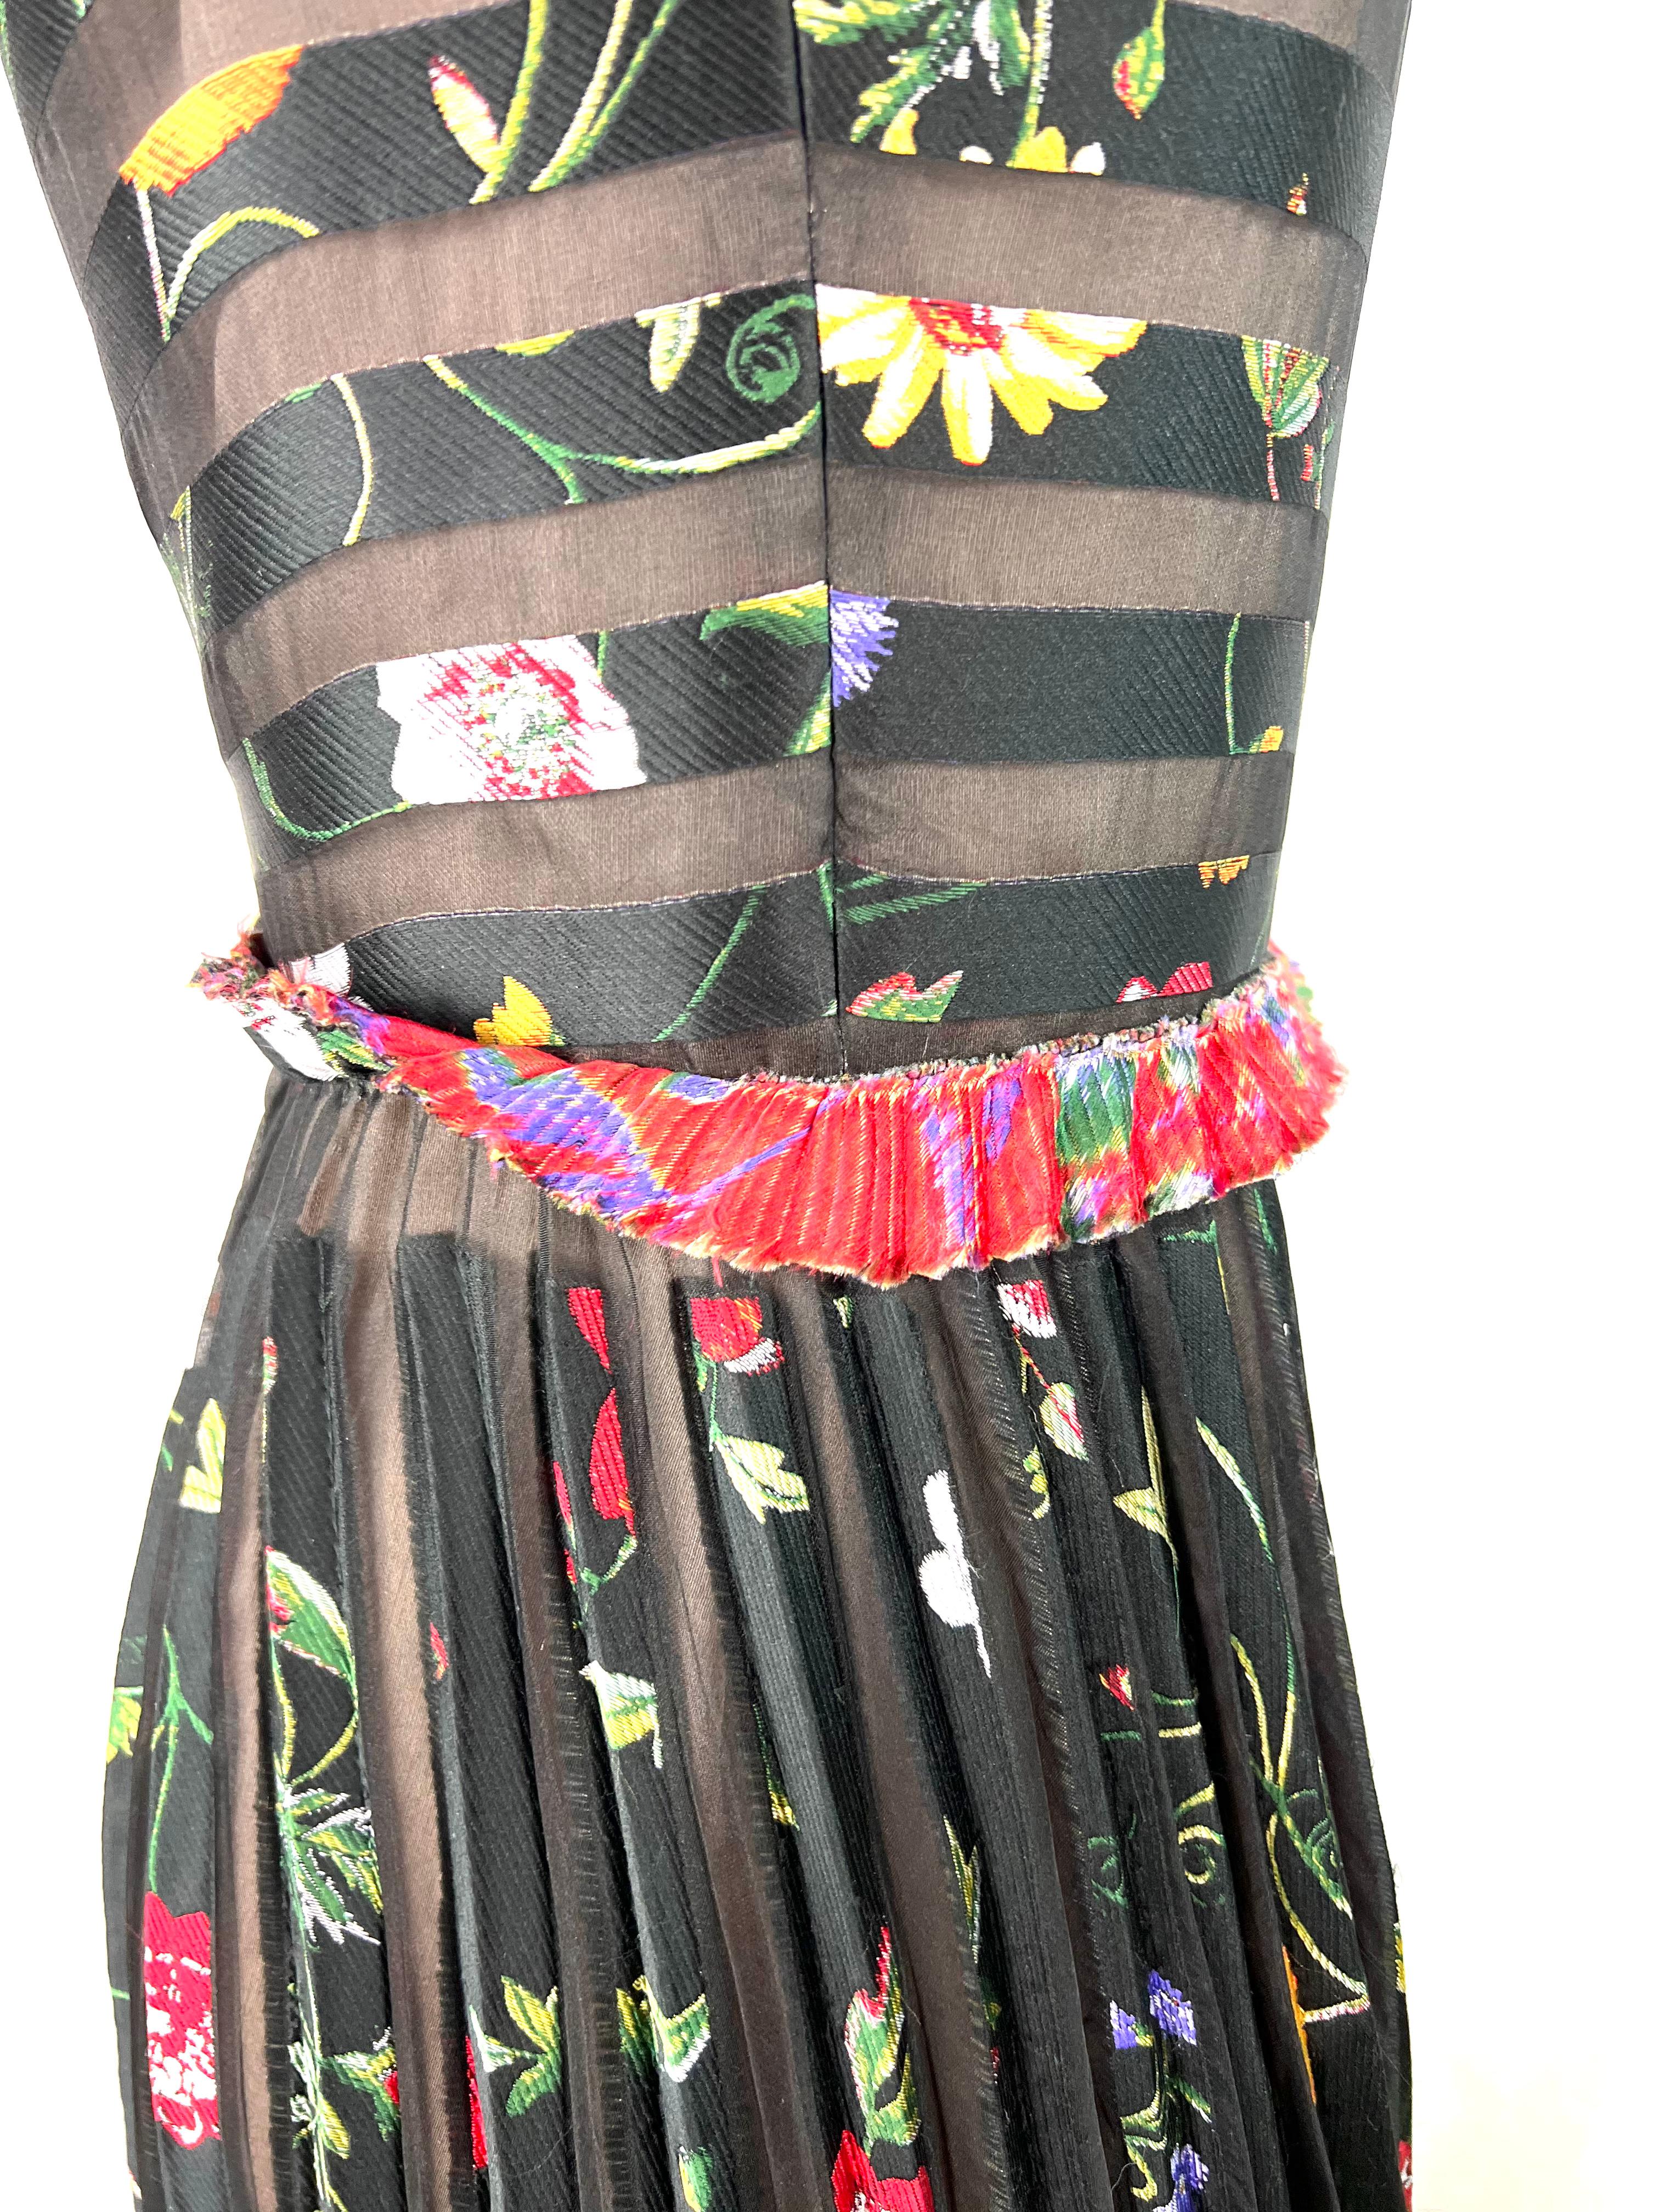 black floral embroidered dress